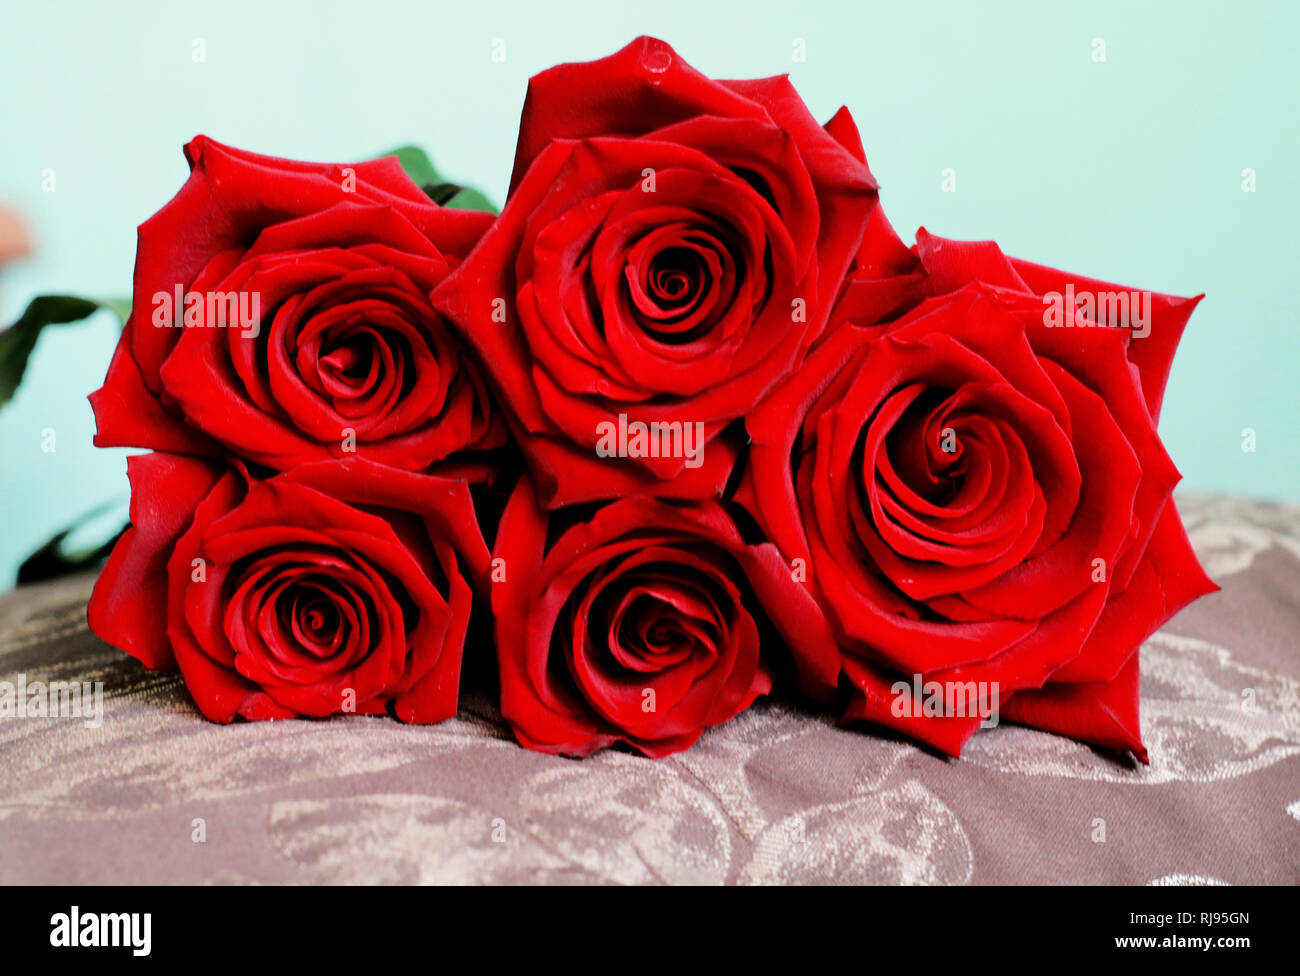 Schönen Haufen dunkle rote Rosen auf Kissen. Nähe zu sehen. Happy  Valentines Day, Hochzeit, Liebe, Geburtstag Kulisse für Grusskarten,  Wallpaper, Geschenk Stockfotografie - Alamy